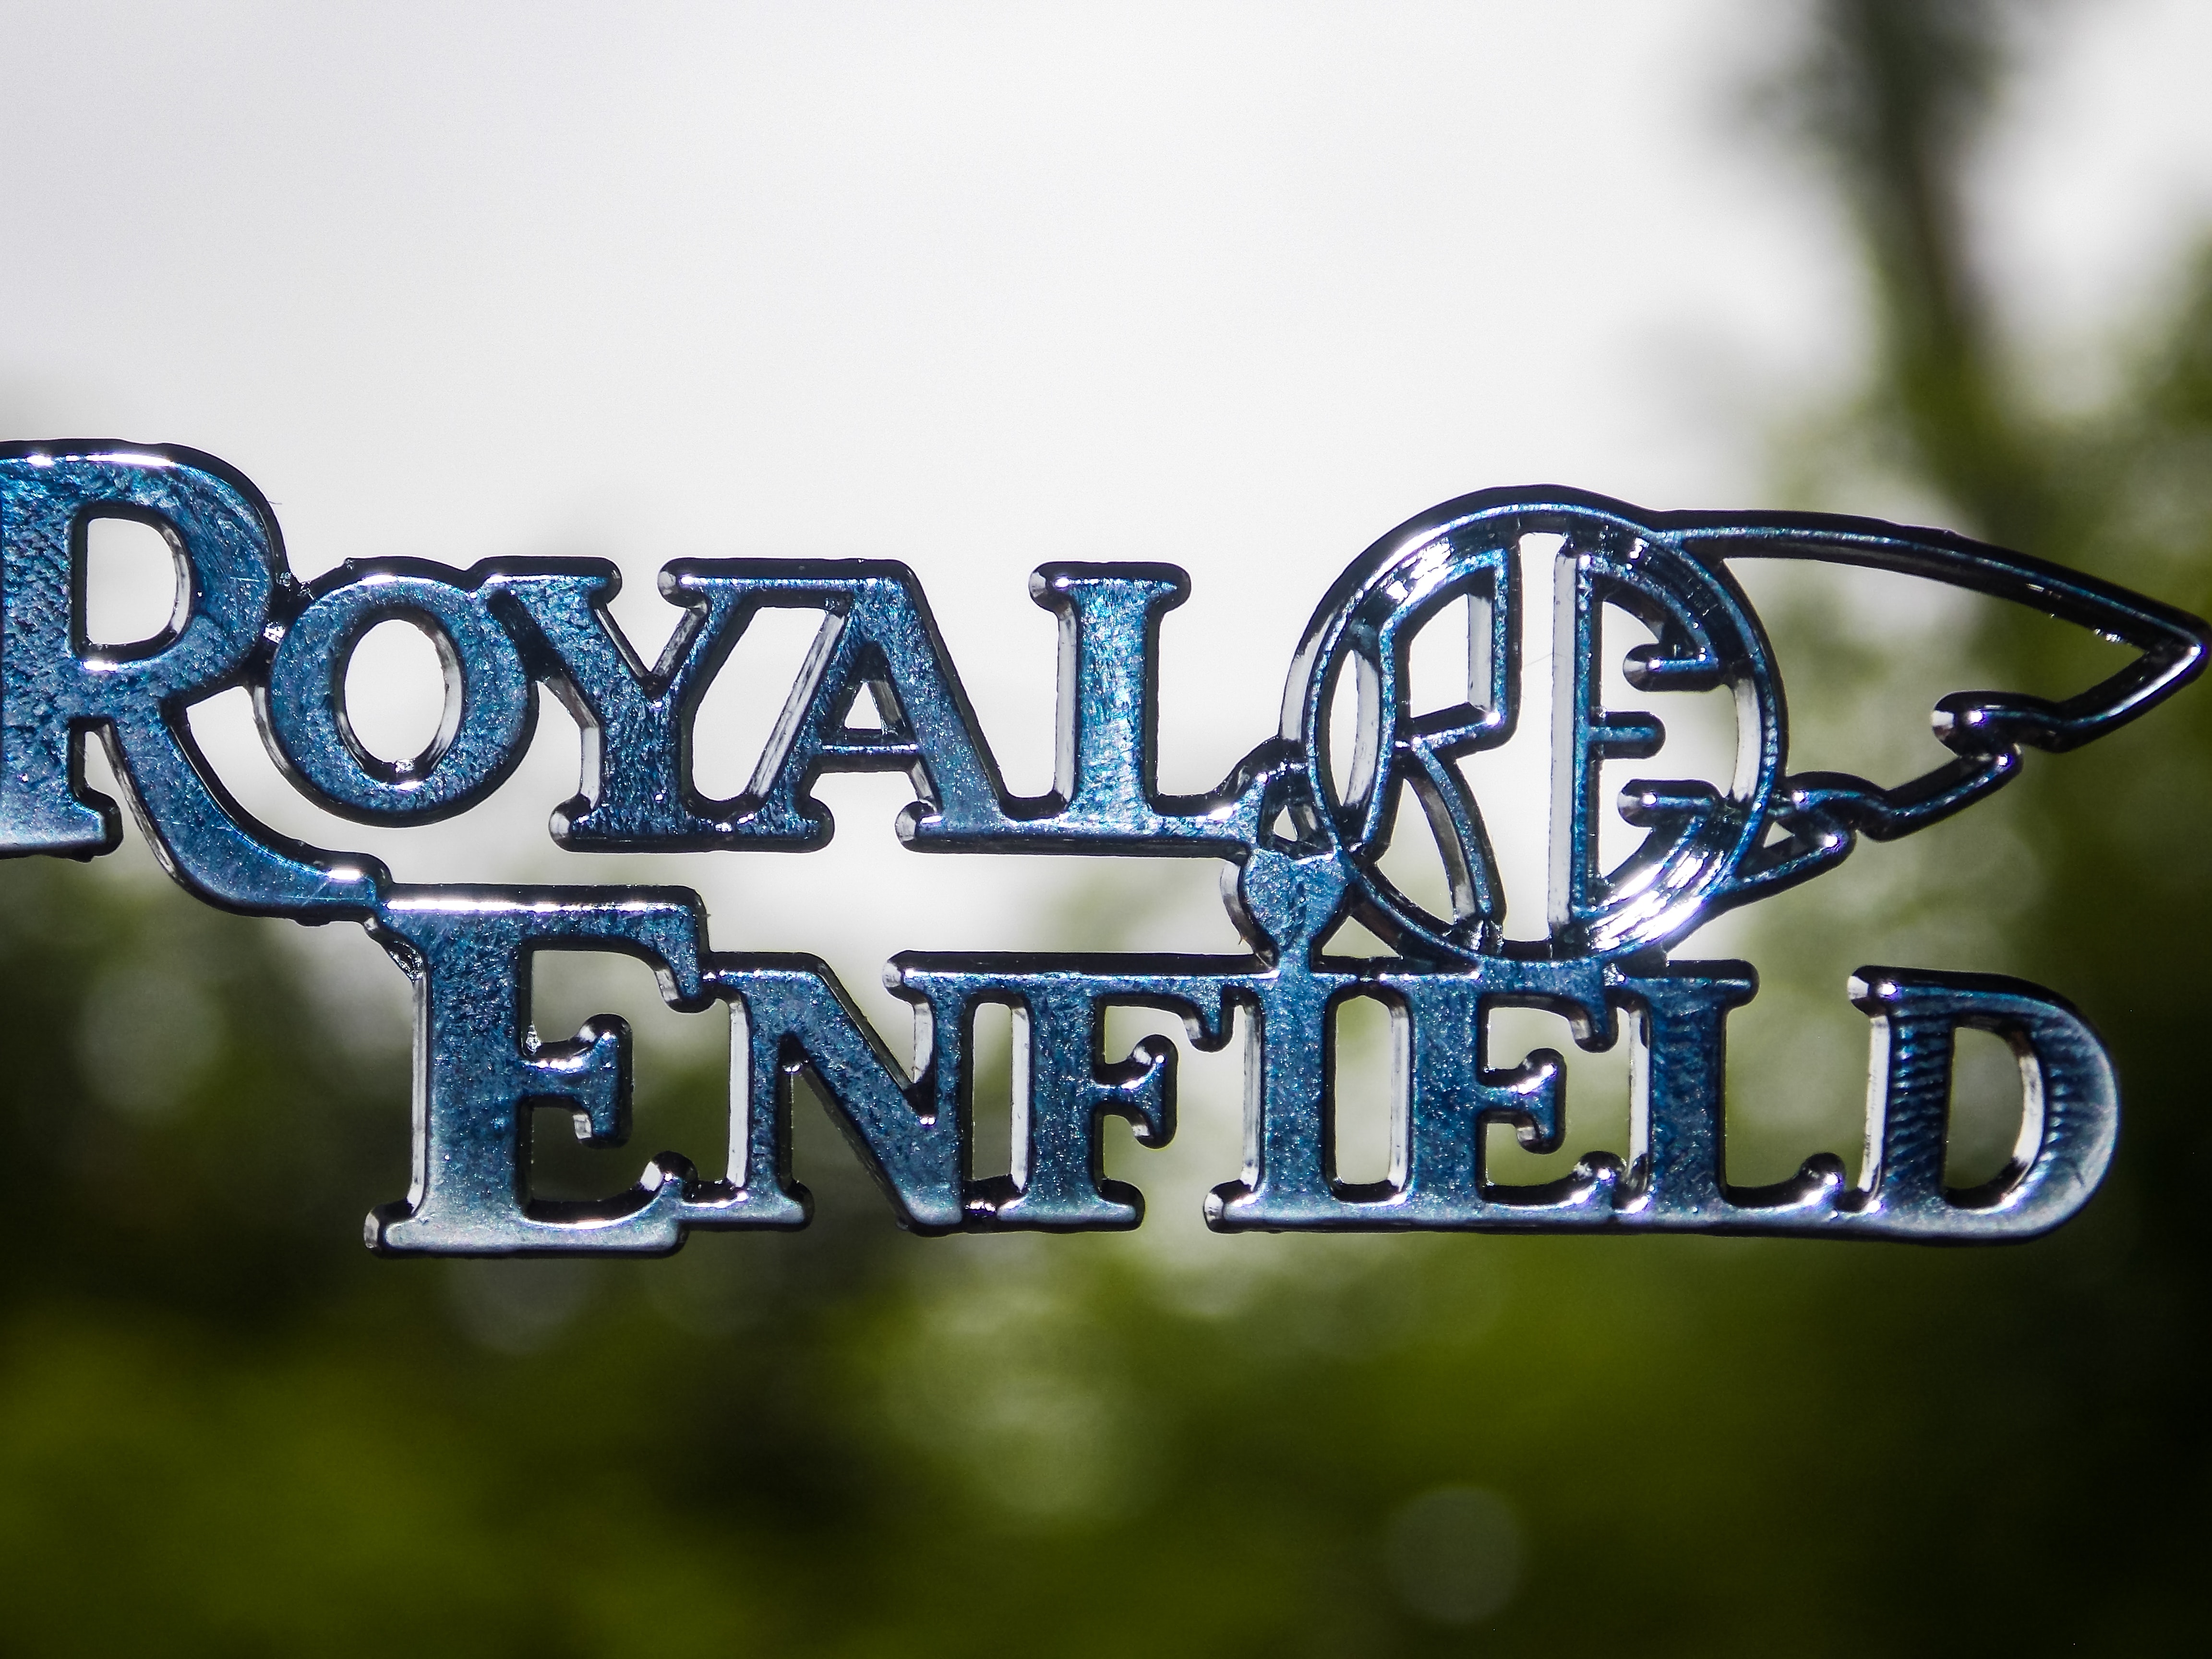 Royal Enfield Logo Wallpaper Hd - 4608x3456 Wallpaper 